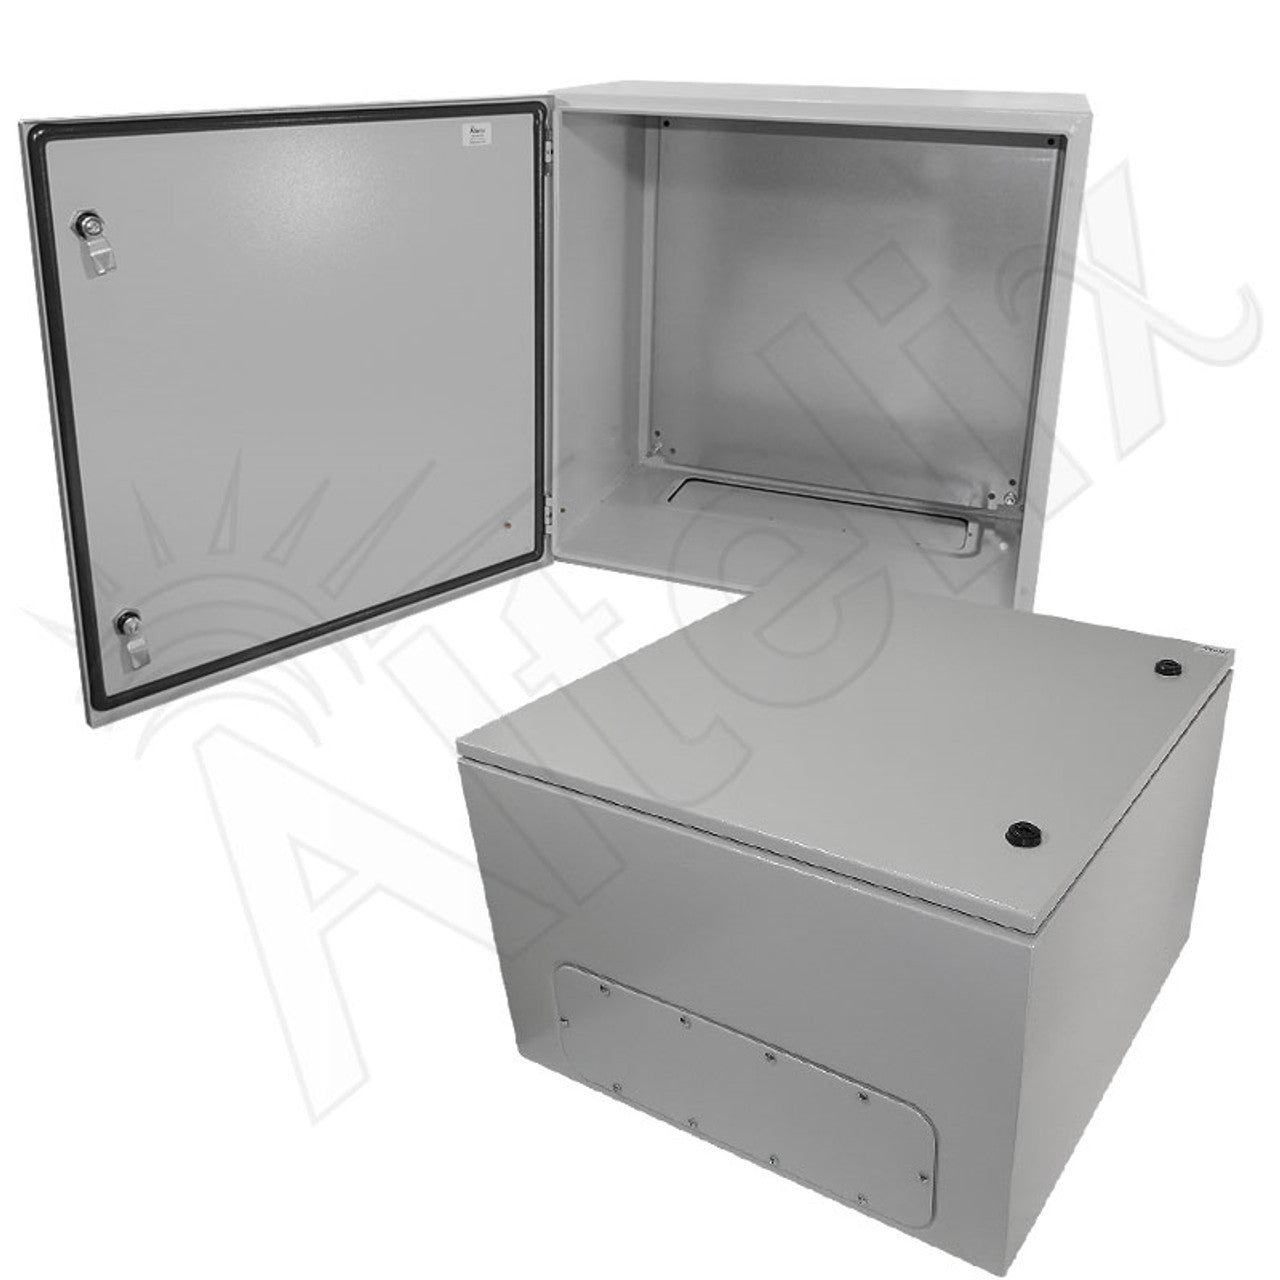 Altelix NEMA 4X Steel Weatherproof Enclosure with Steel Equipment Mounting Plate